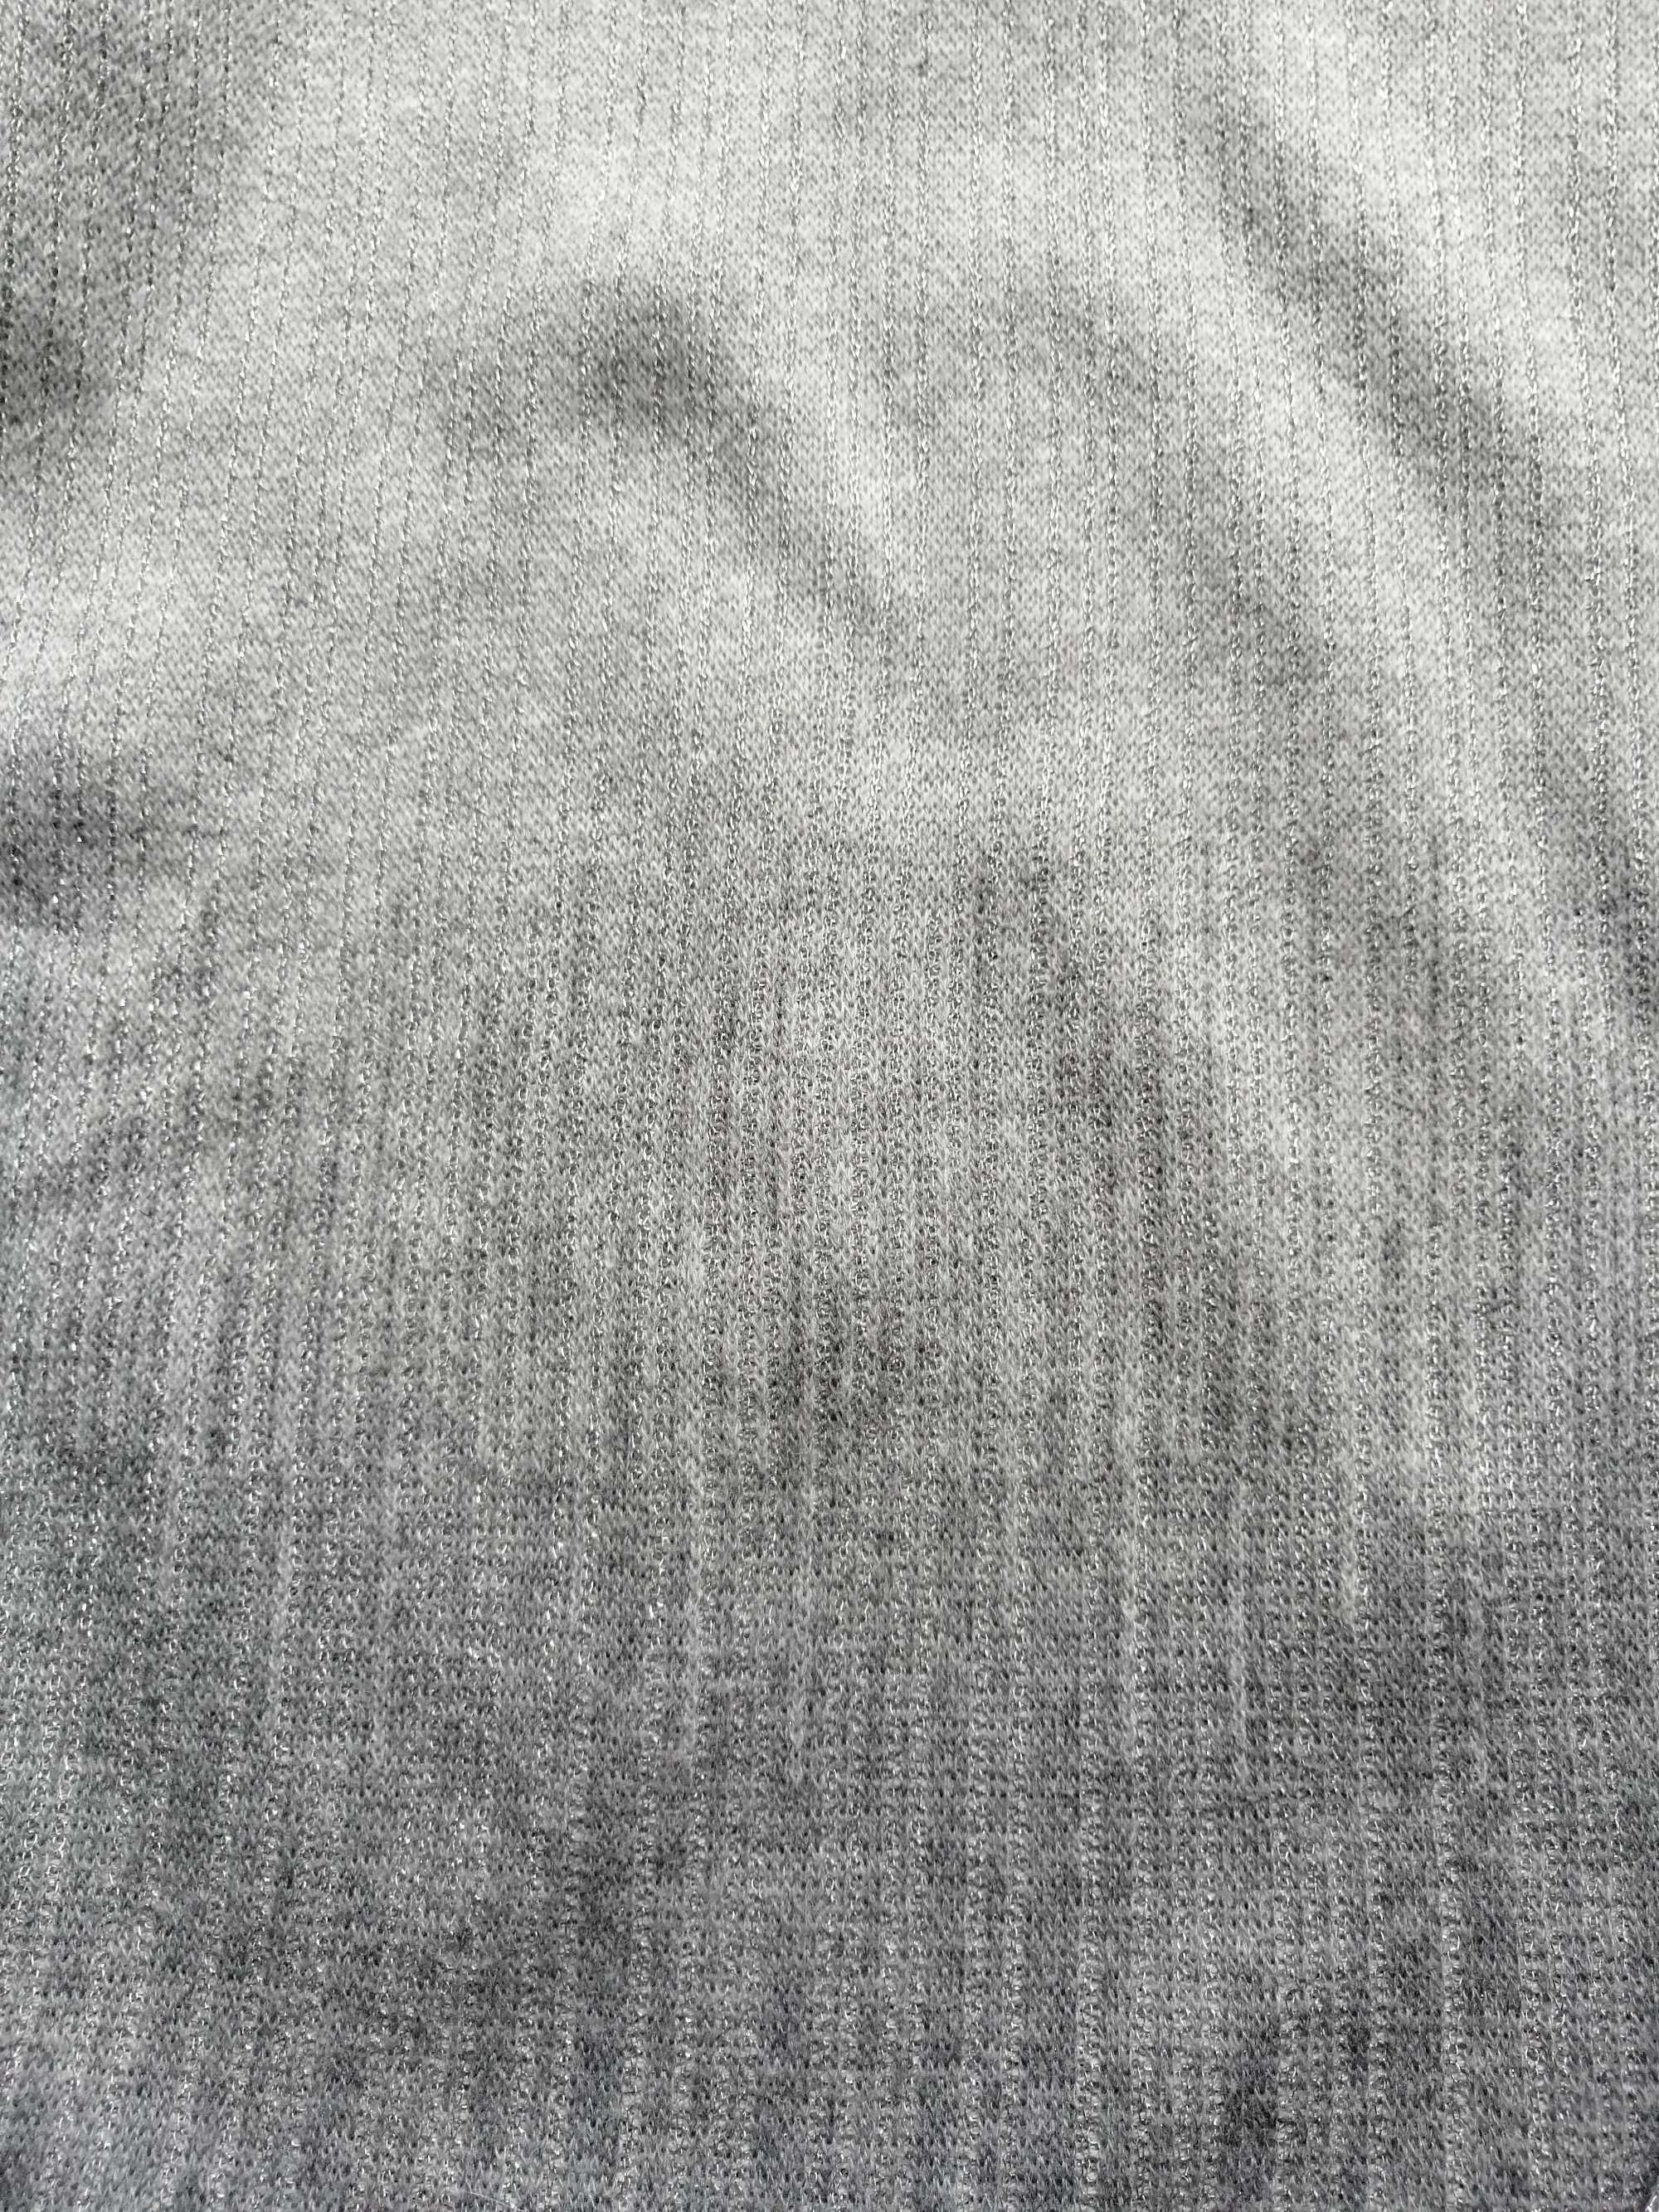 38 40 sweterek bluzka srebrny szary